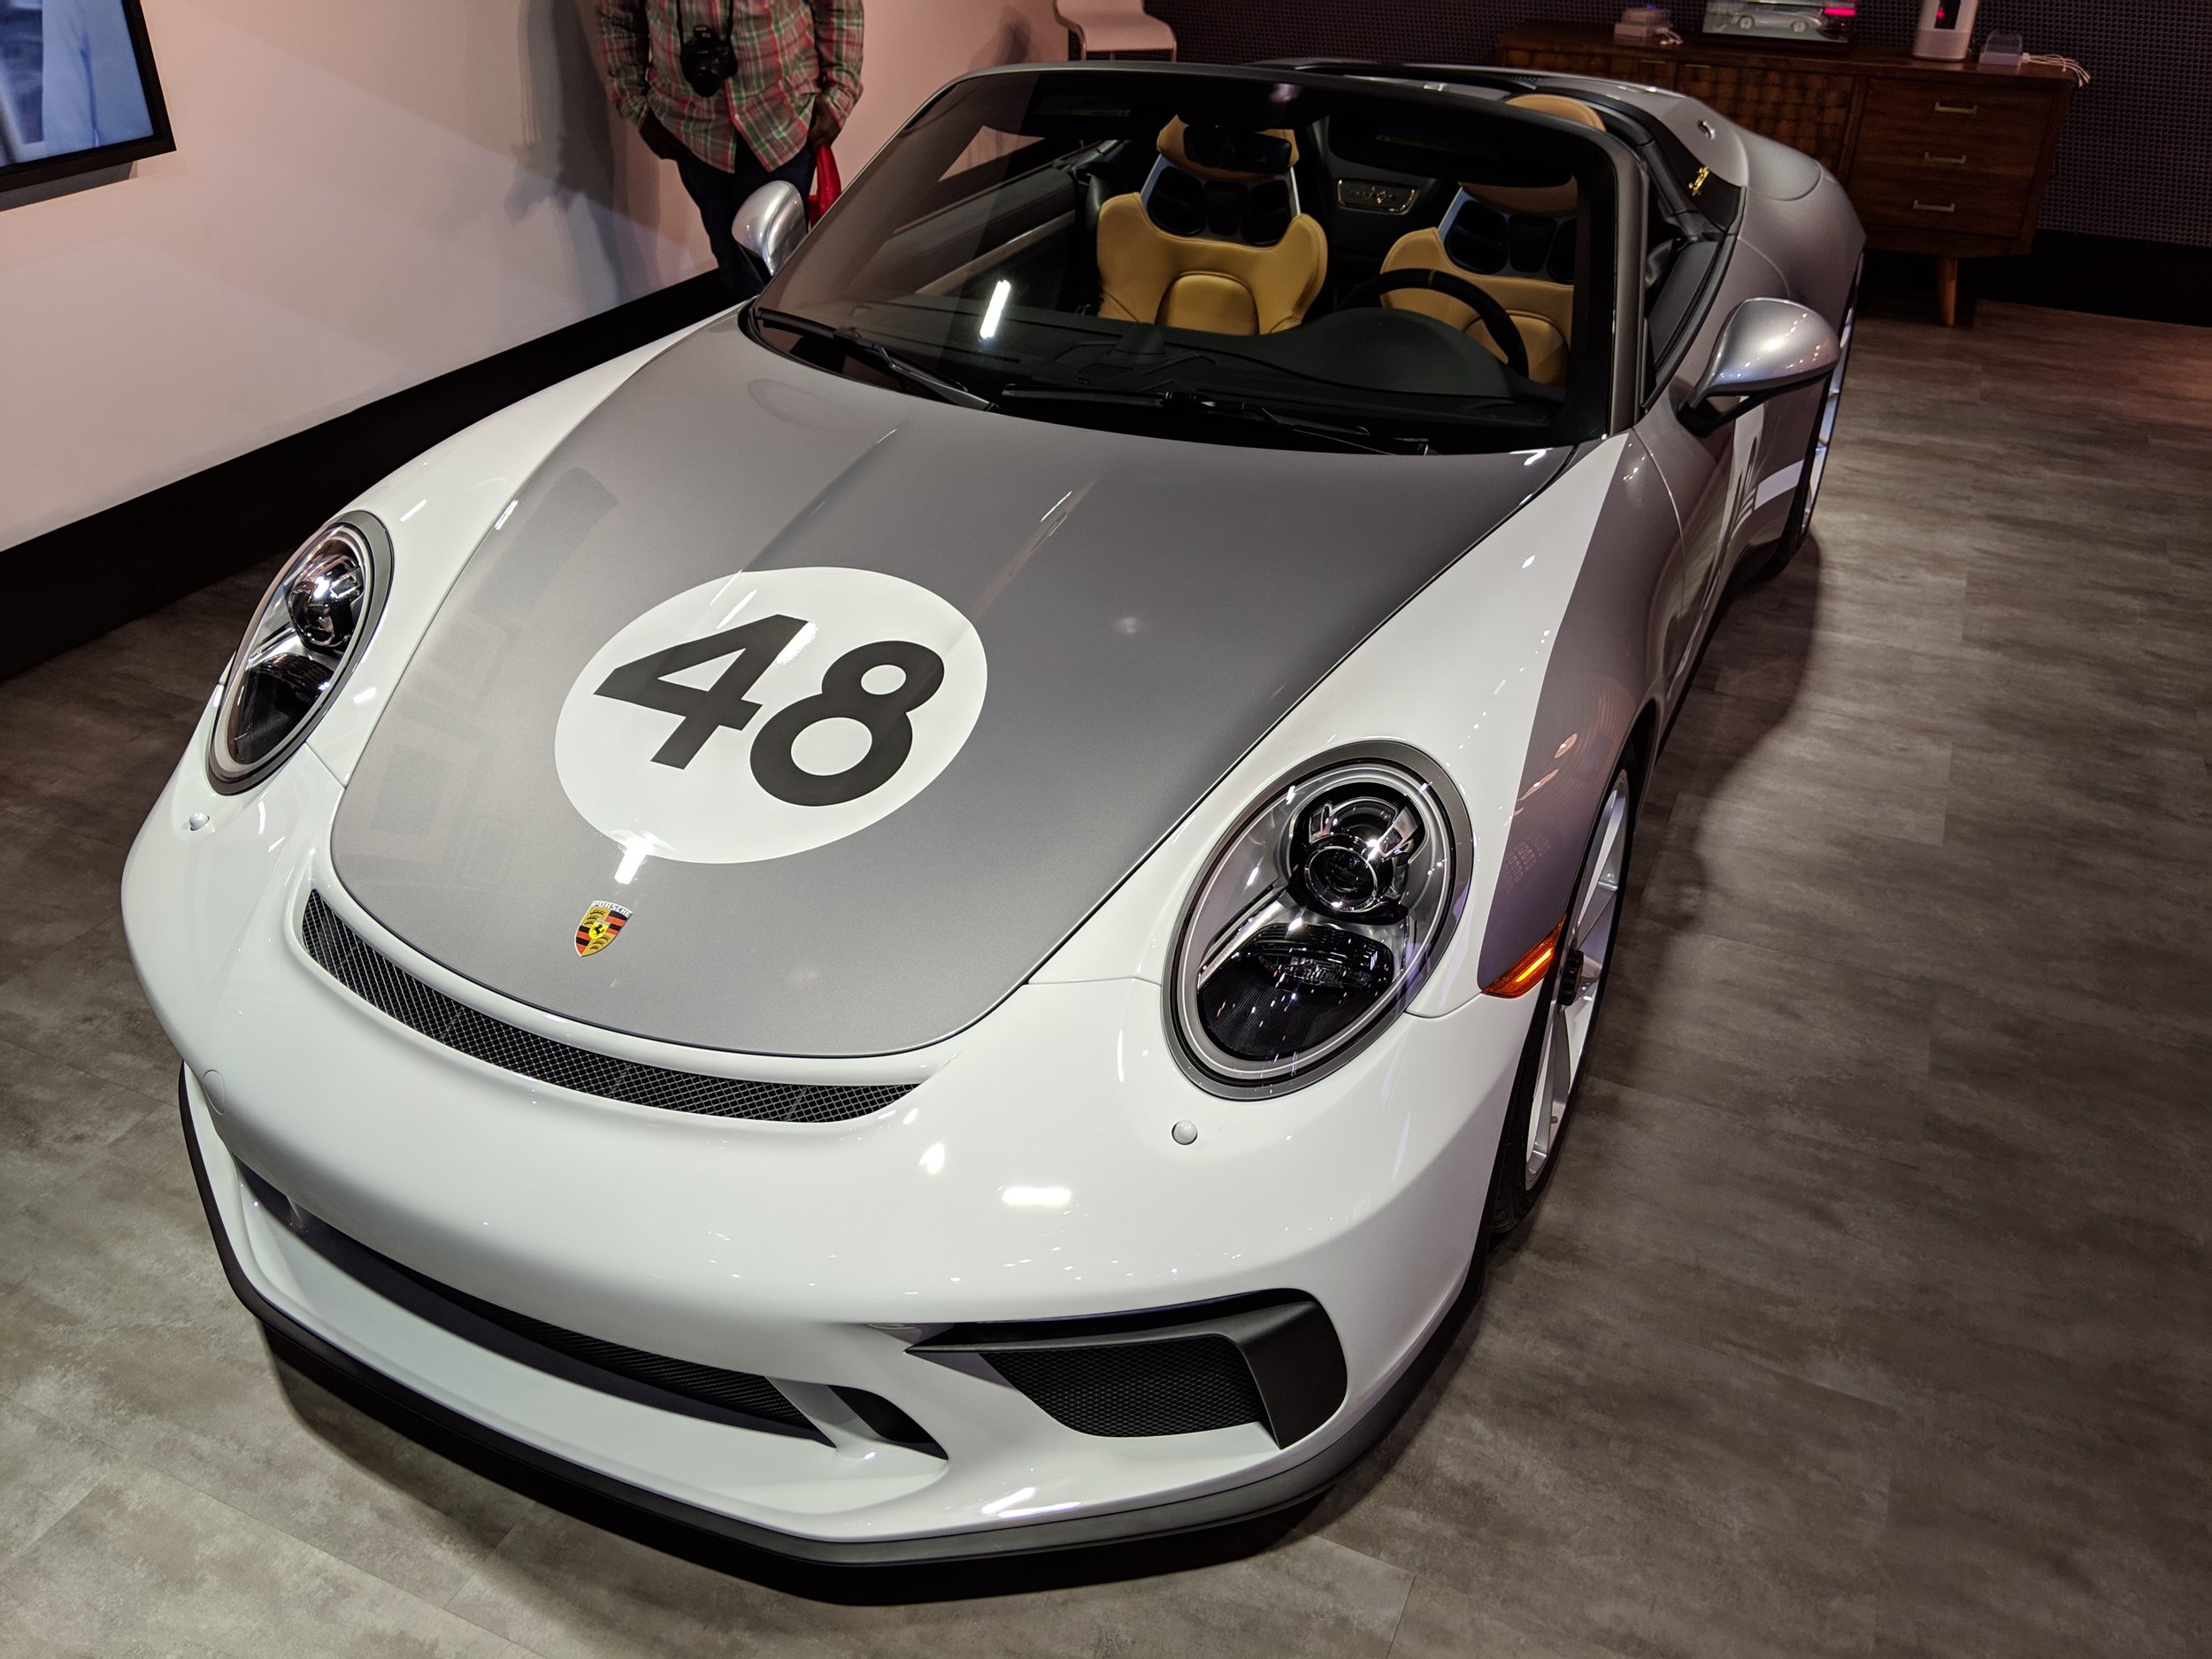 Porsche_911_speedster_heritage_front.jpg